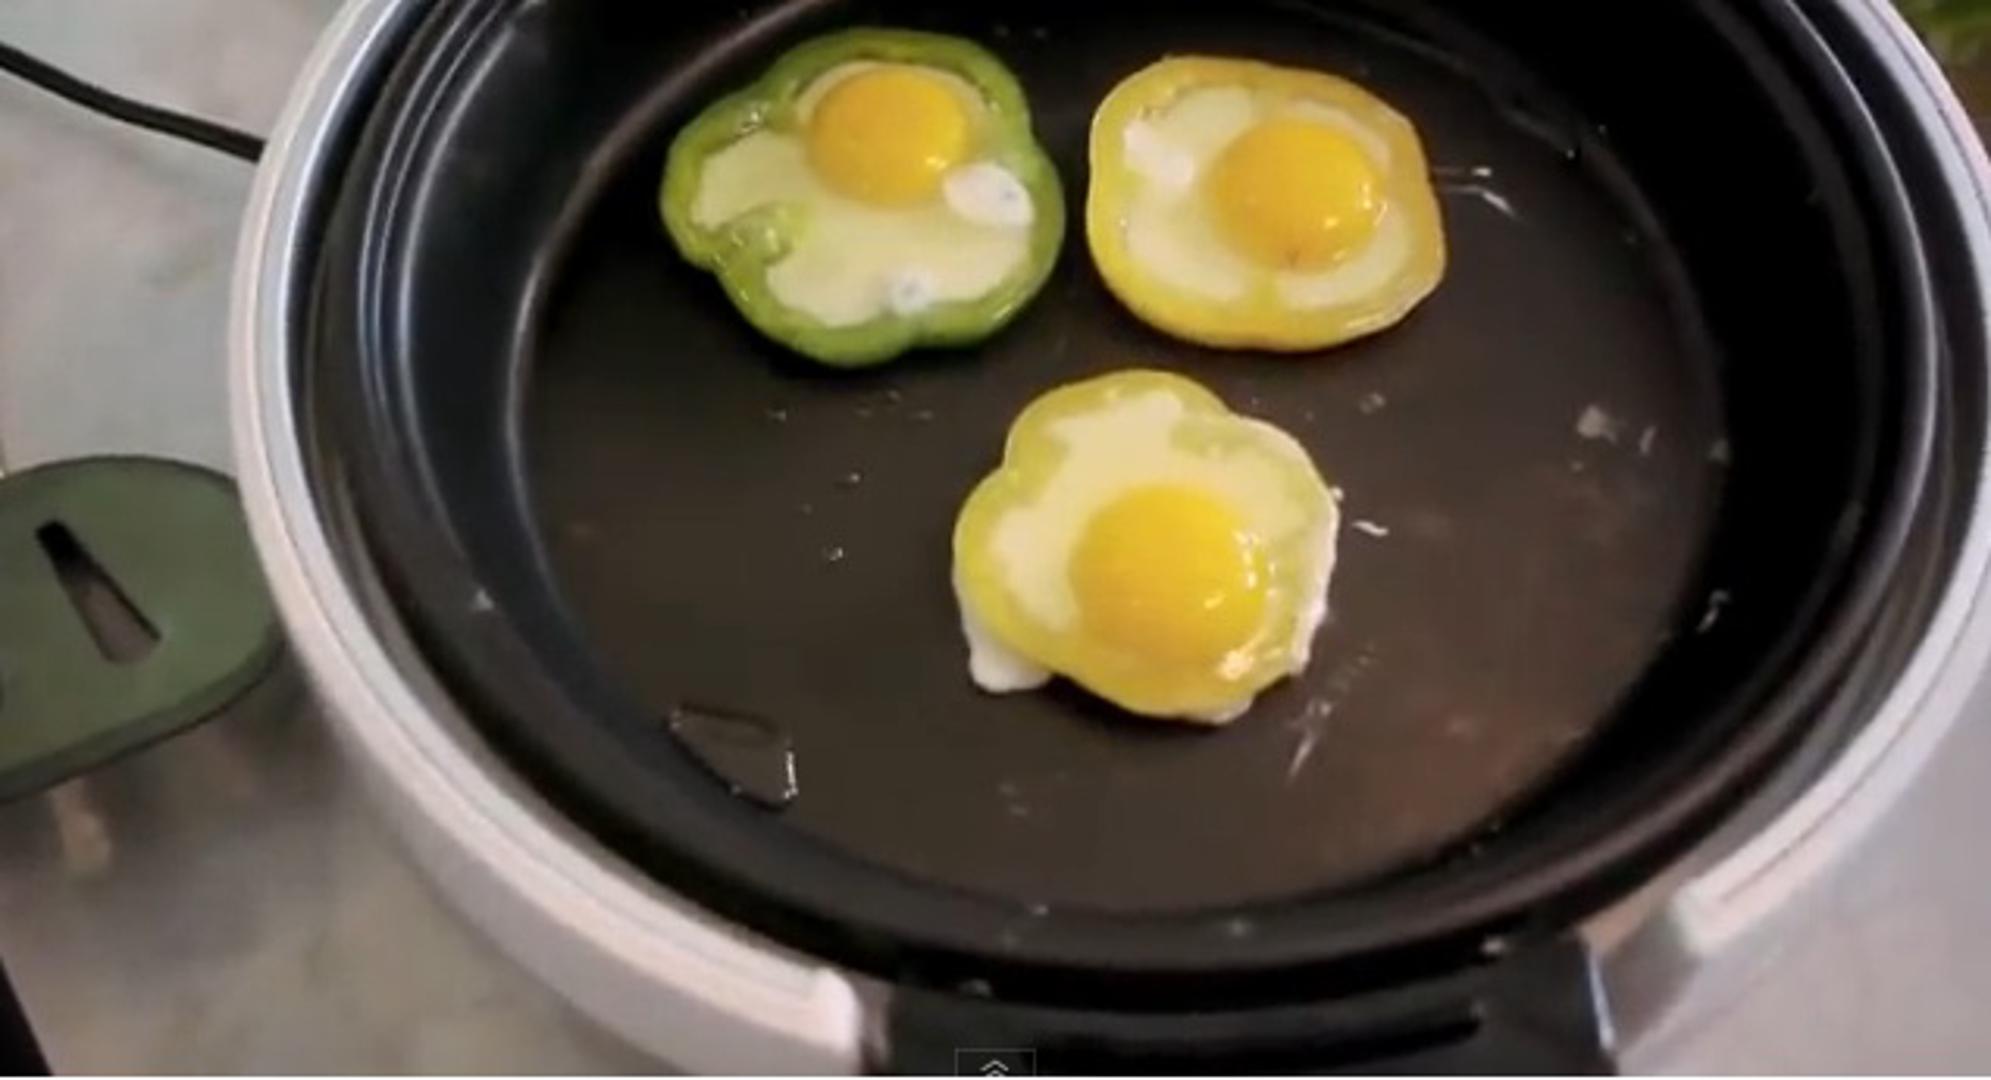 Jaja su odličan izbor za najvažniji obrok u danu – doručak!